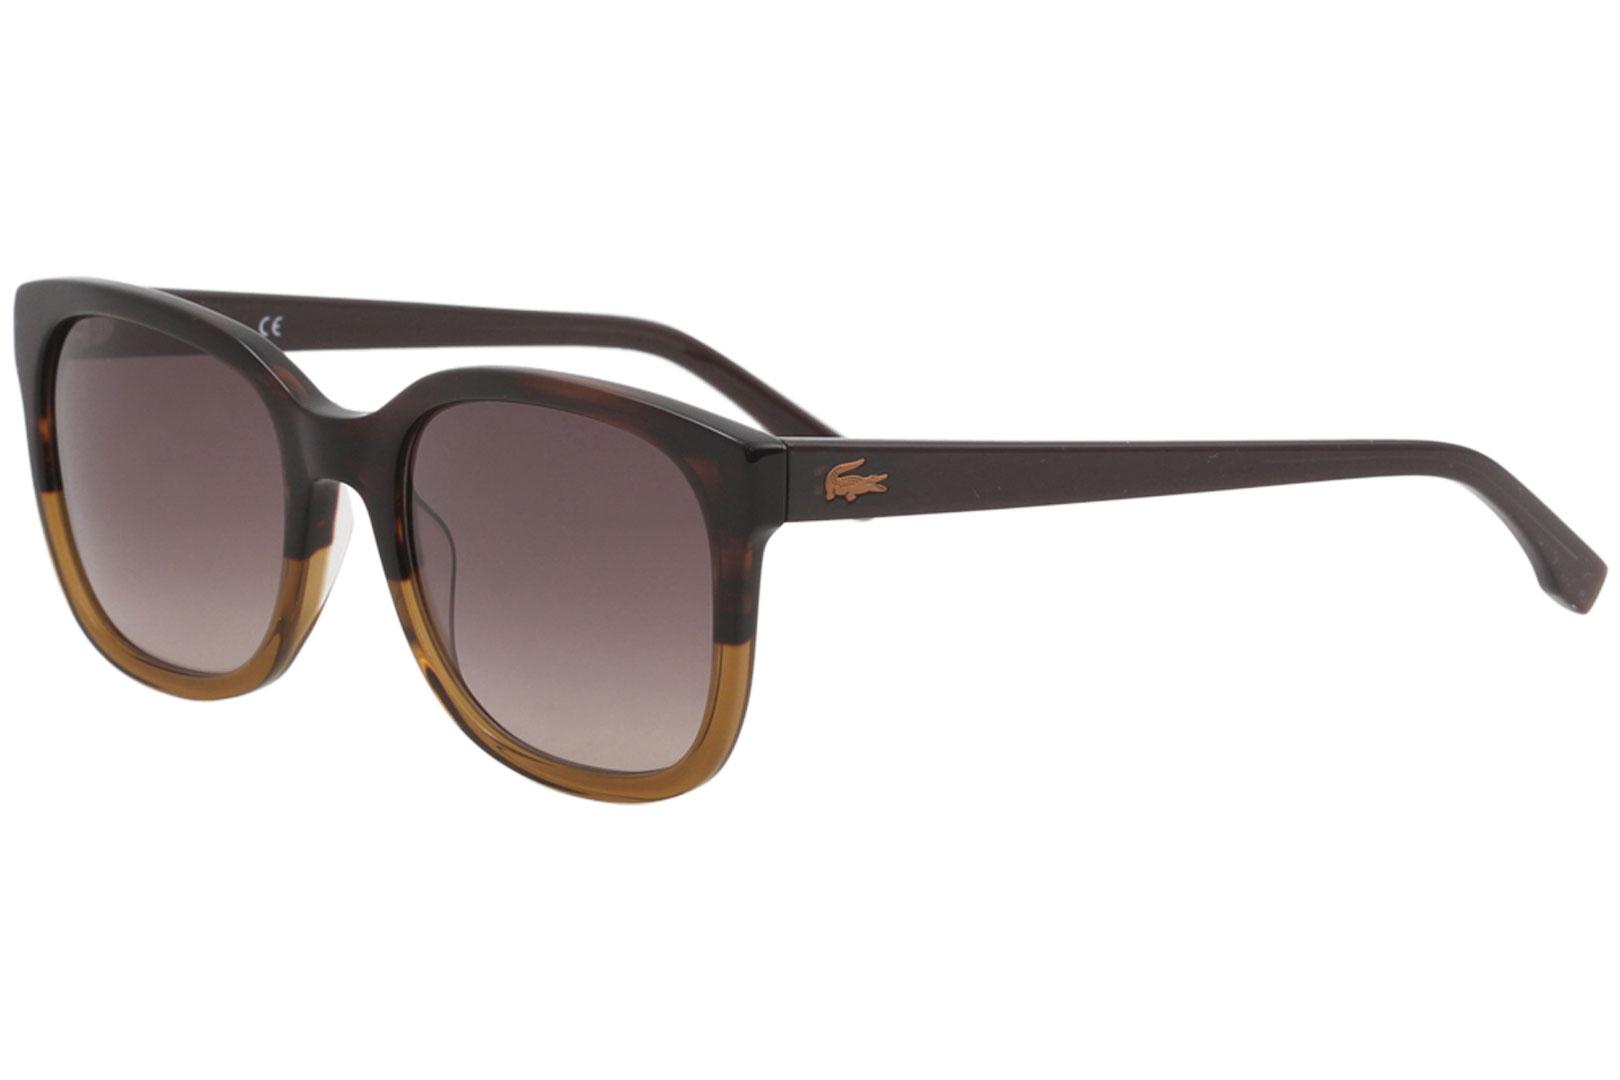 Lacoste Women's L815S L/815/S 210 Brown Fashion Square Sunglasses 55mm - Brown/Brown Gradient   210 - Lens 55 Bridge 19 Temple 140mm